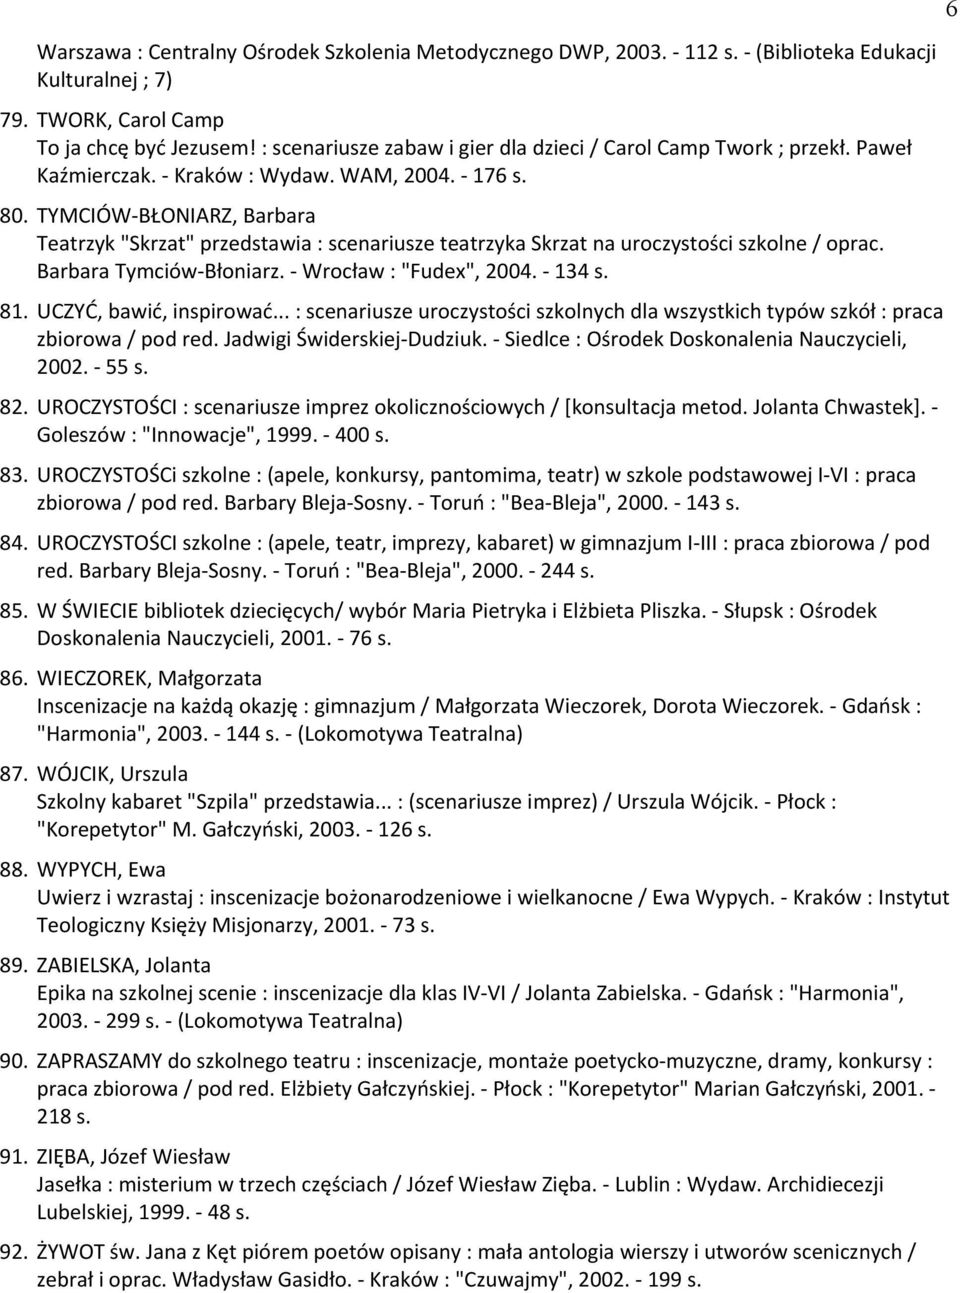 TAMCIÓW-BŁONIARZ, Barbara Teatrzyk "Skrzat" przedstawia : scenariusze teatrzyka Skrzat na uroczystości szkolne / oprac. Barbara Tymciów-Błoniarz. - Wrocław : "Fudex", 2004. - 134 81.